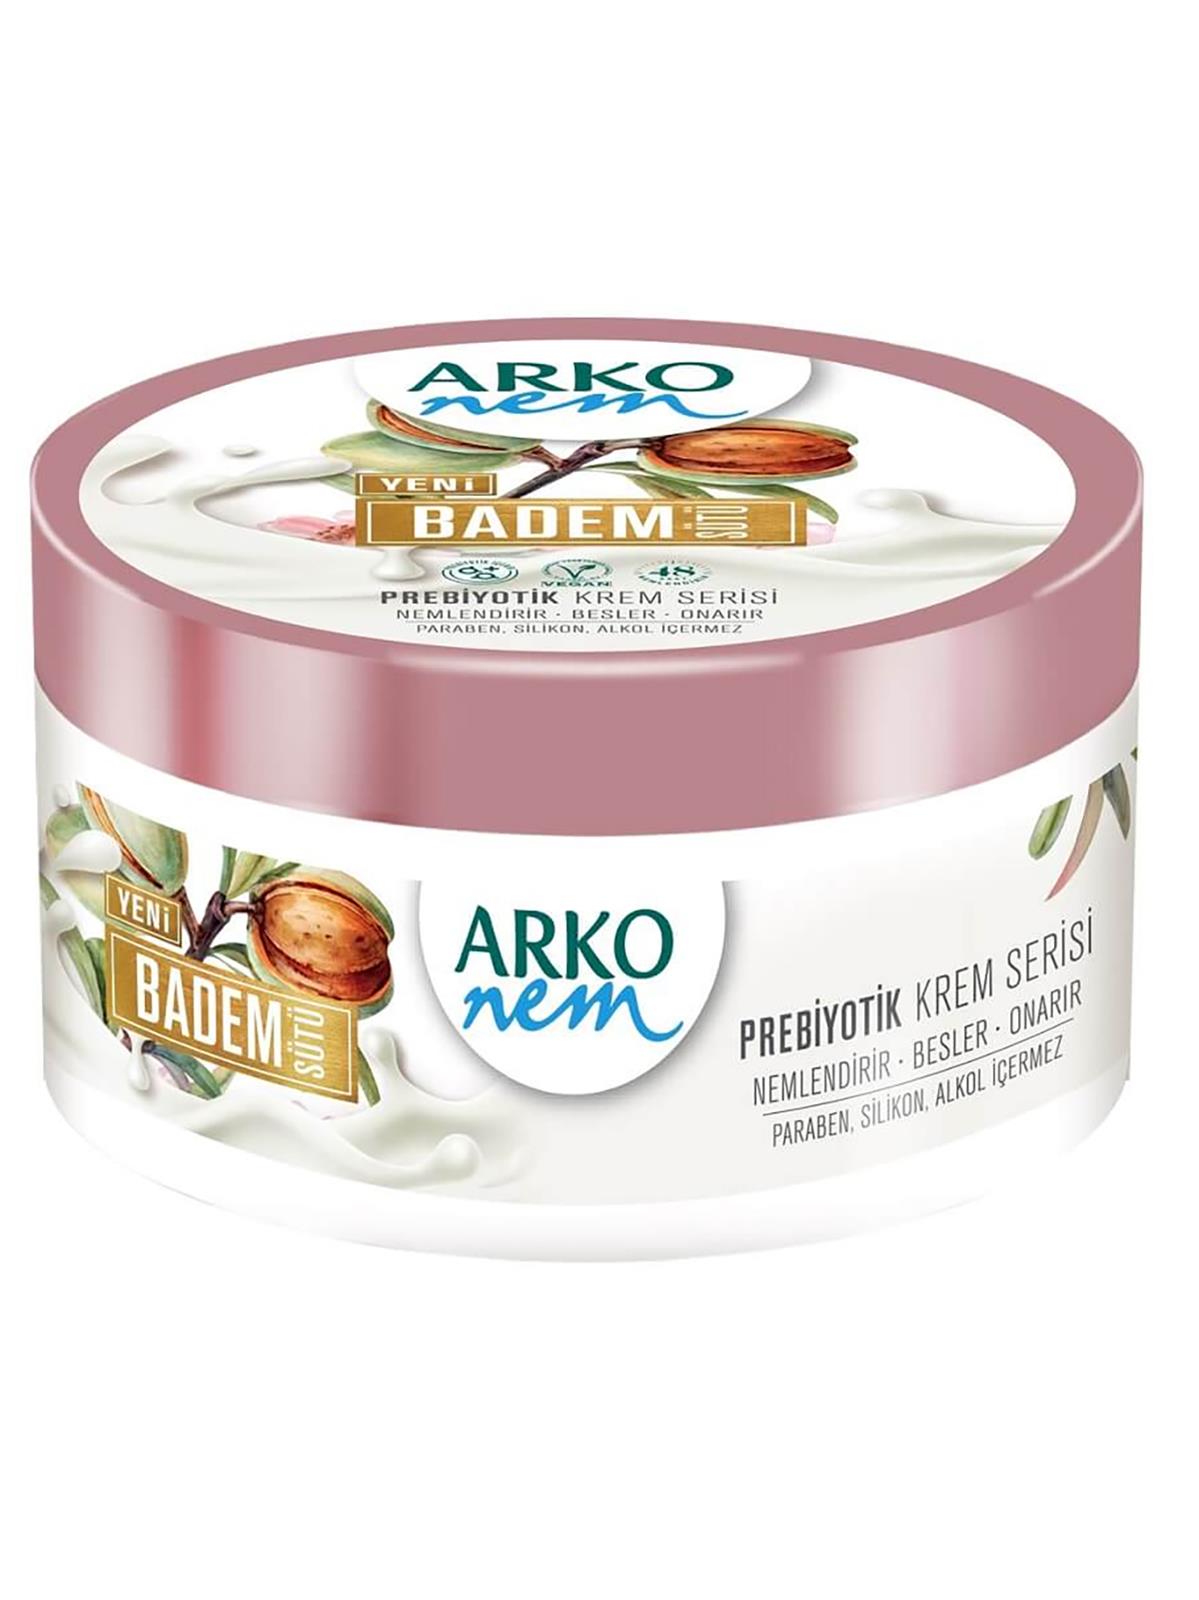 Arko Nem Krem Prebiyotik 250 ml Badem Sütü